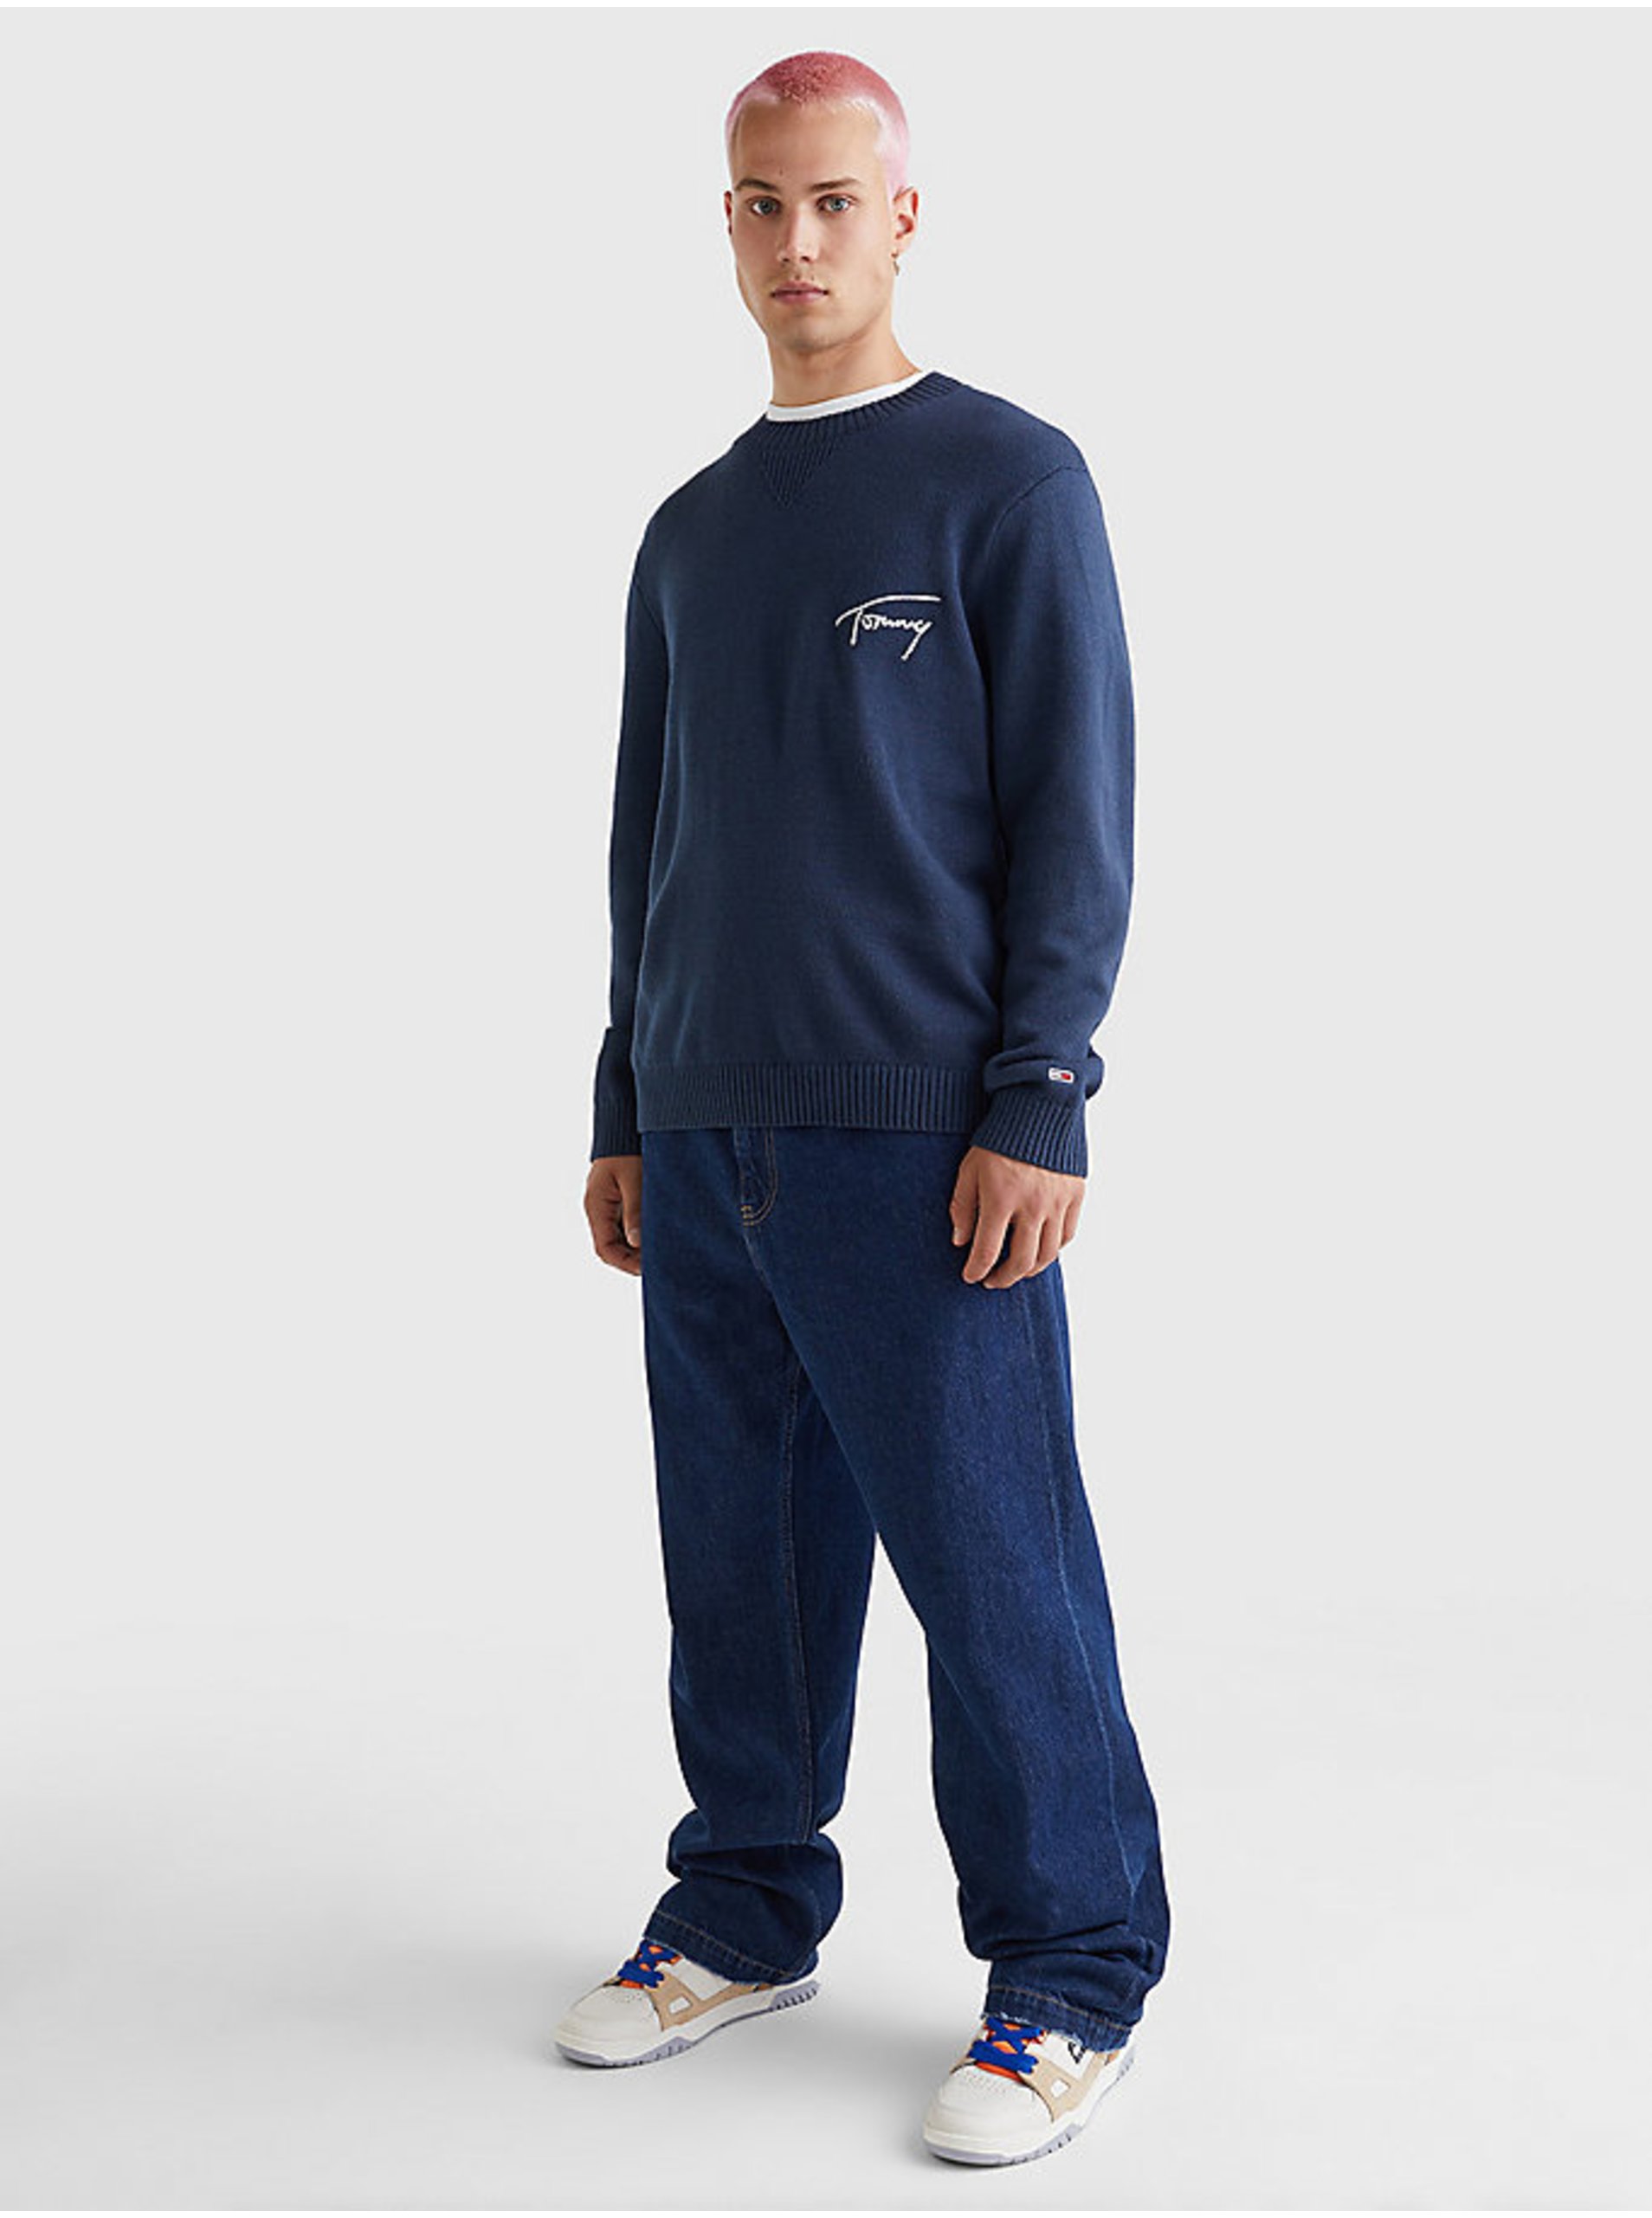 E-shop Tmavě modrý pánský svetr Tommy Jeans